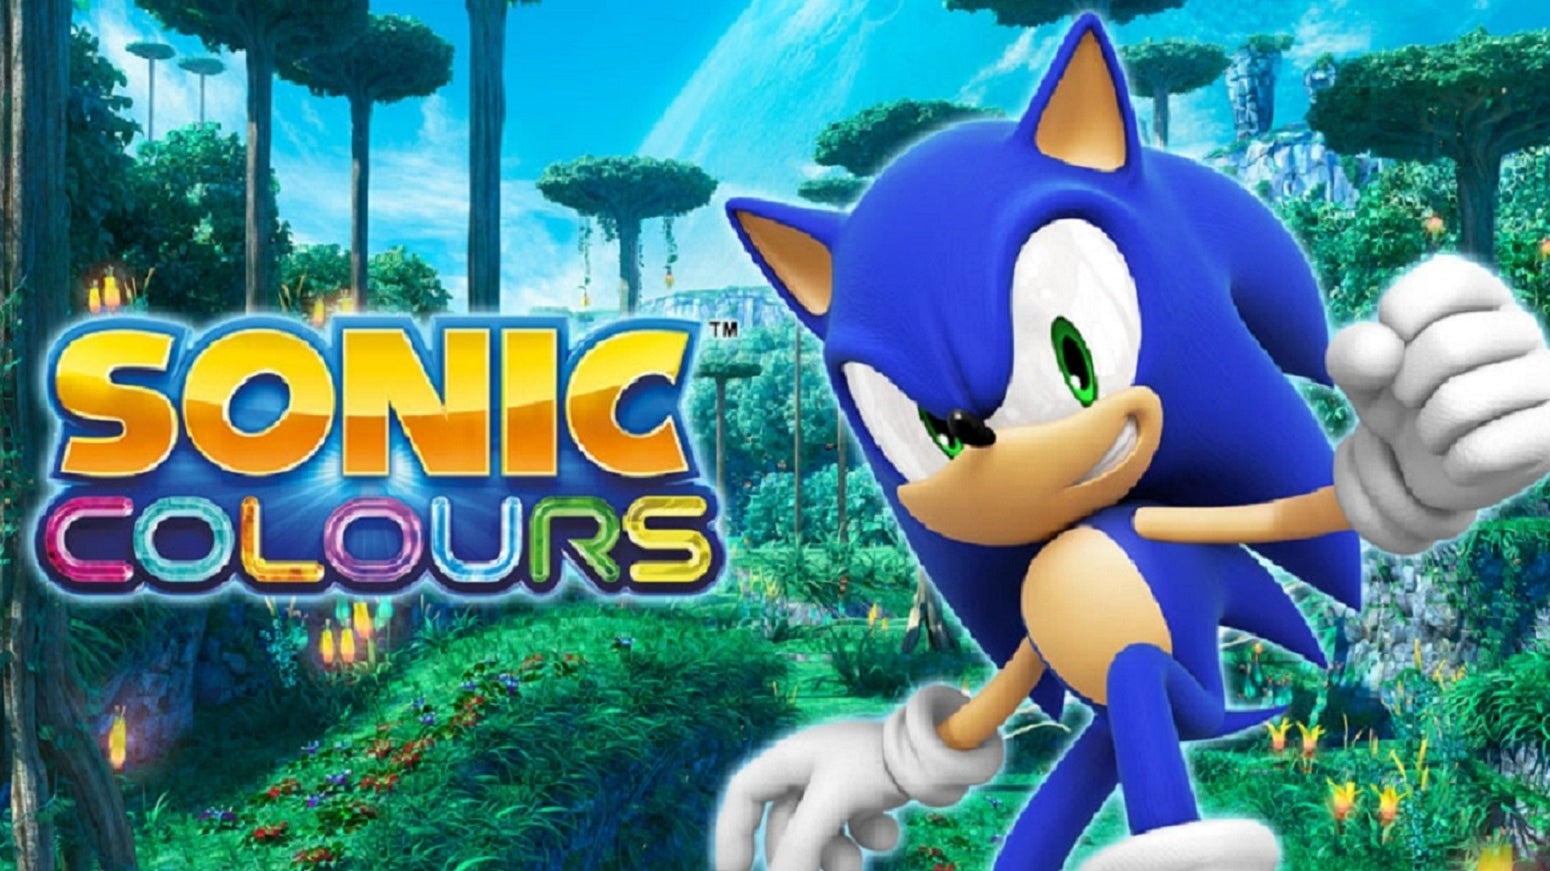 Bilder zu Gerücht: Sonic Colours könnte ein Remaster bekommen - zum 30. Sonic-Jubiläum